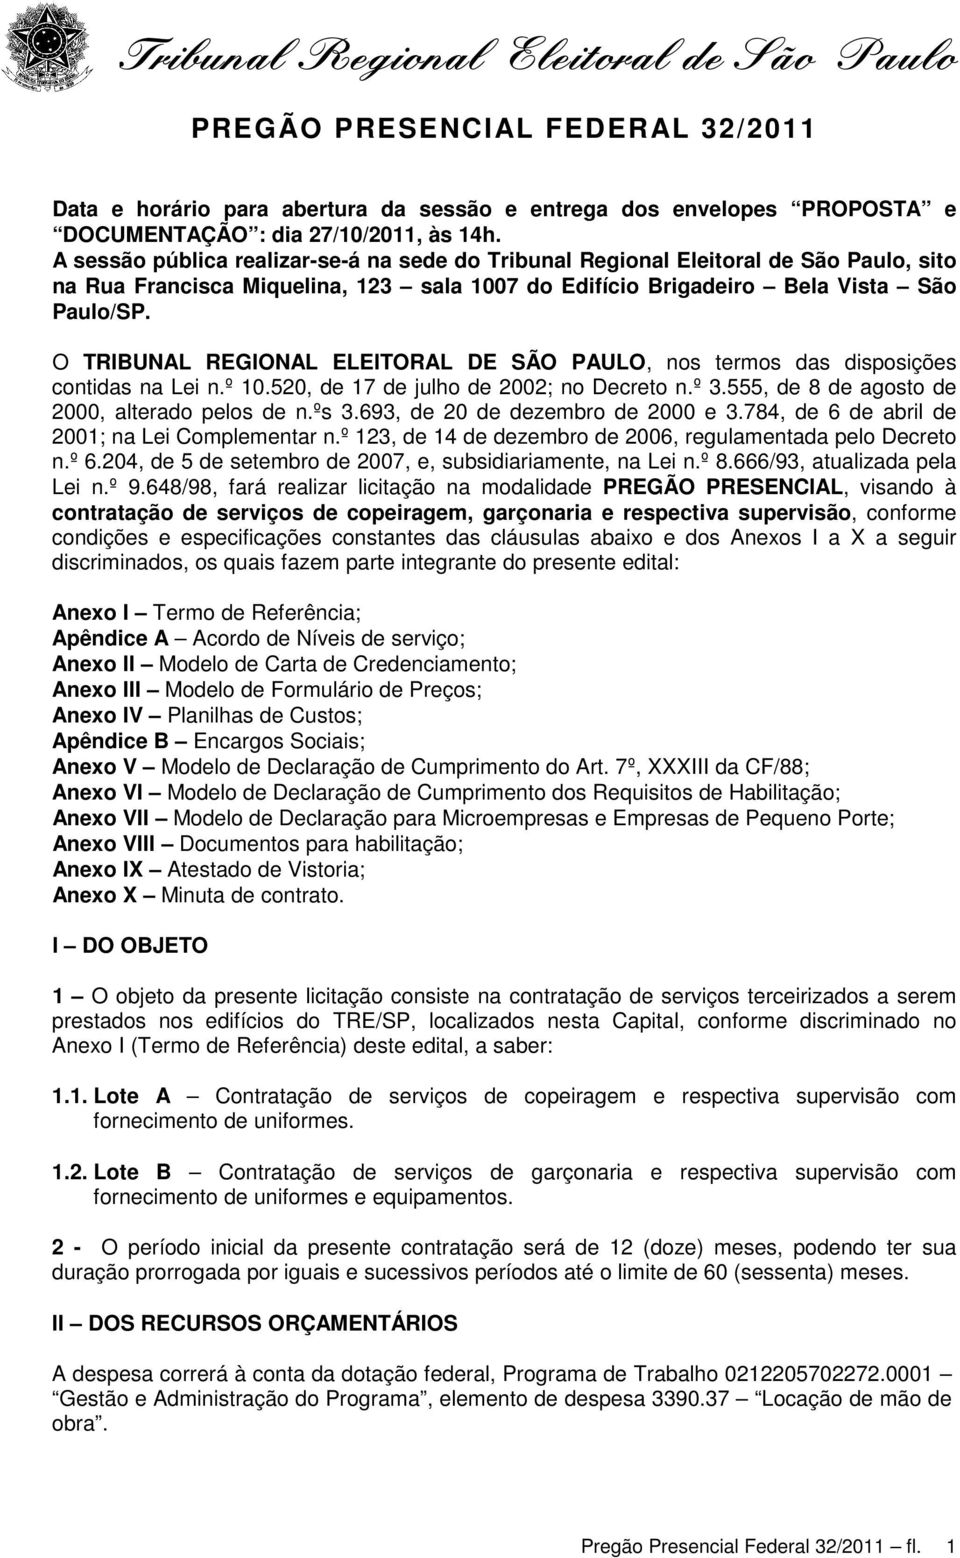 O TRIBUNAL REGIONAL ELEITORAL DE SÃO PAULO, nos termos das disposições contidas na Lei n.º 10.520, de 17 de julho de 2002; no Decreto n.º 3.555, de 8 de agosto de 2000, alterado pelos de n.ºs 3.